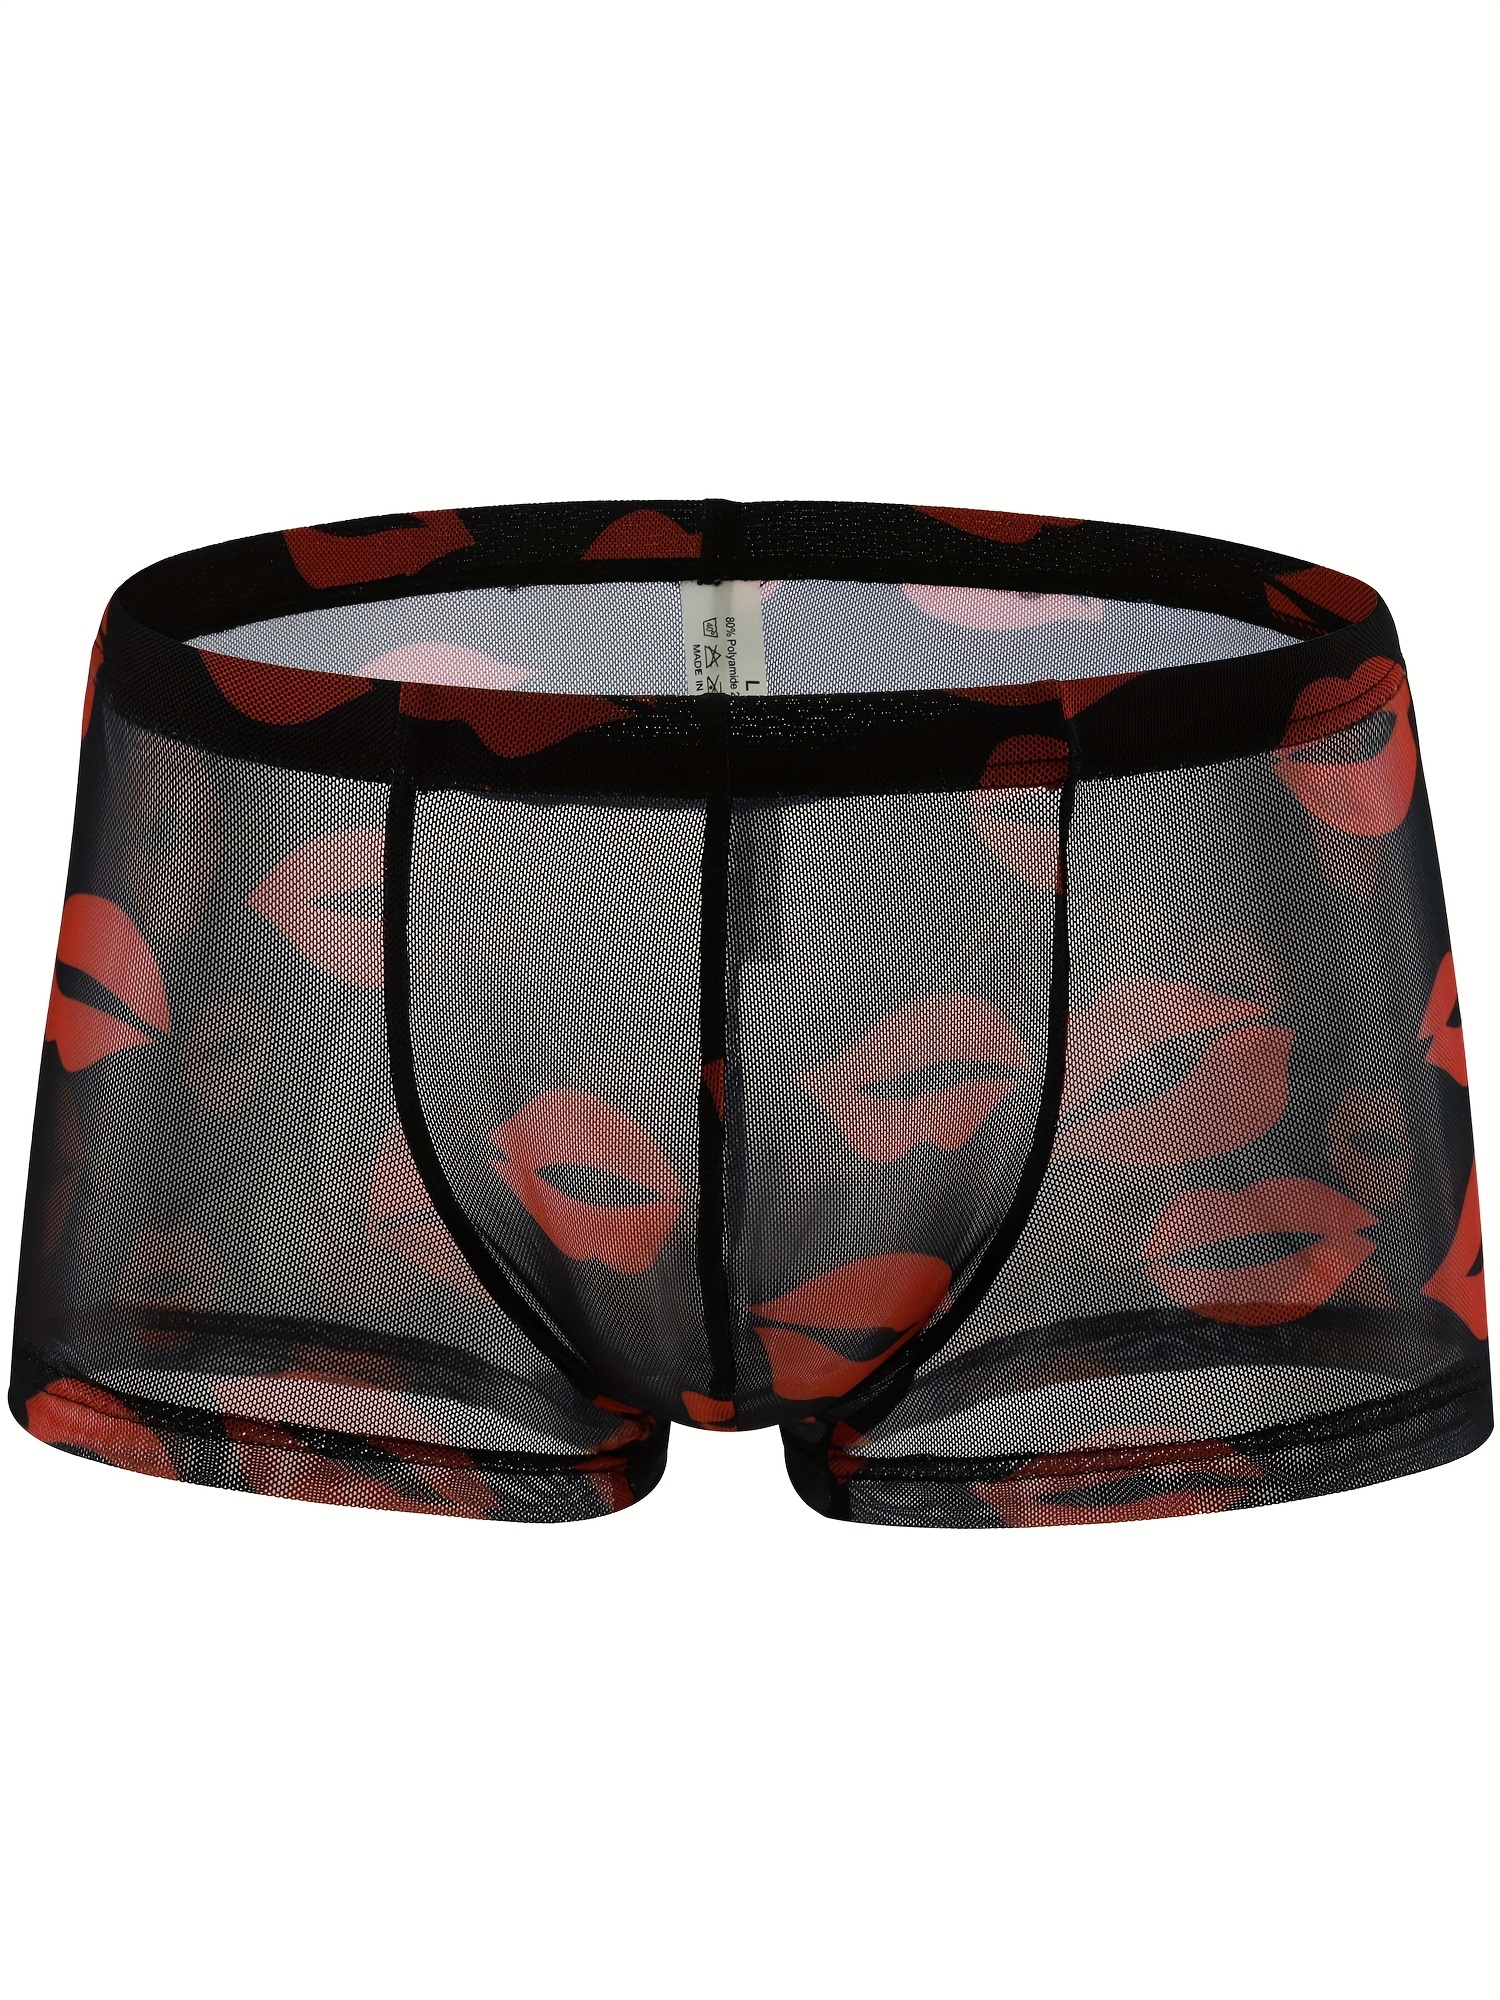 Men Boxer, Sexy Red Lips Pattern Valentine Swimming Briefs, Design